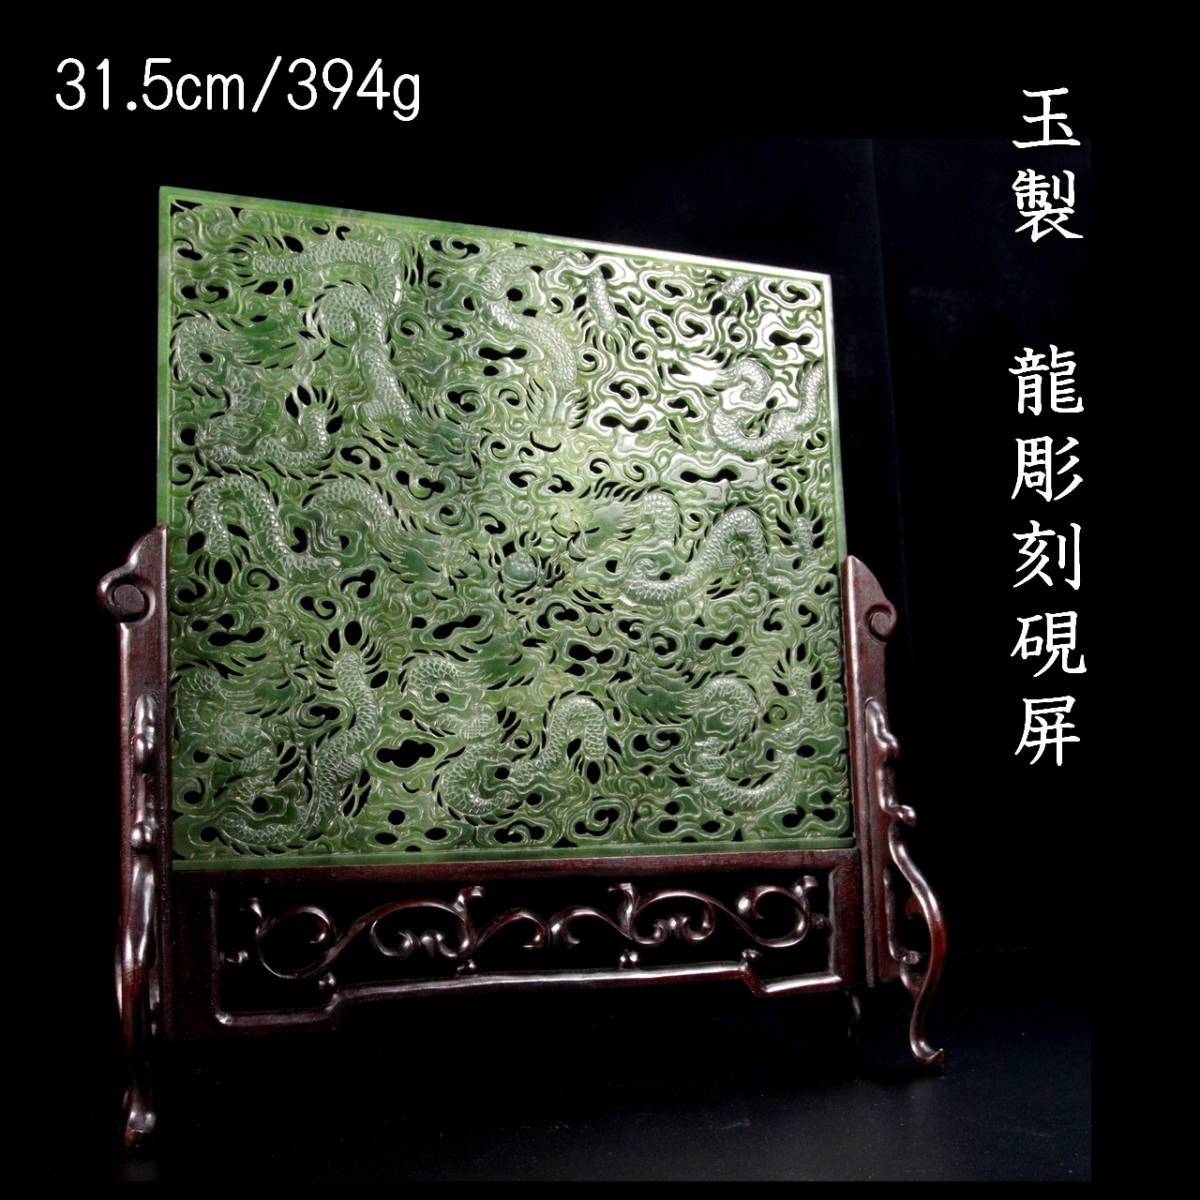 ◇楾◇ 古美術品 玉製 龍彫刻硯屏 31.5cm 394g 書道具 唐木 中国美術